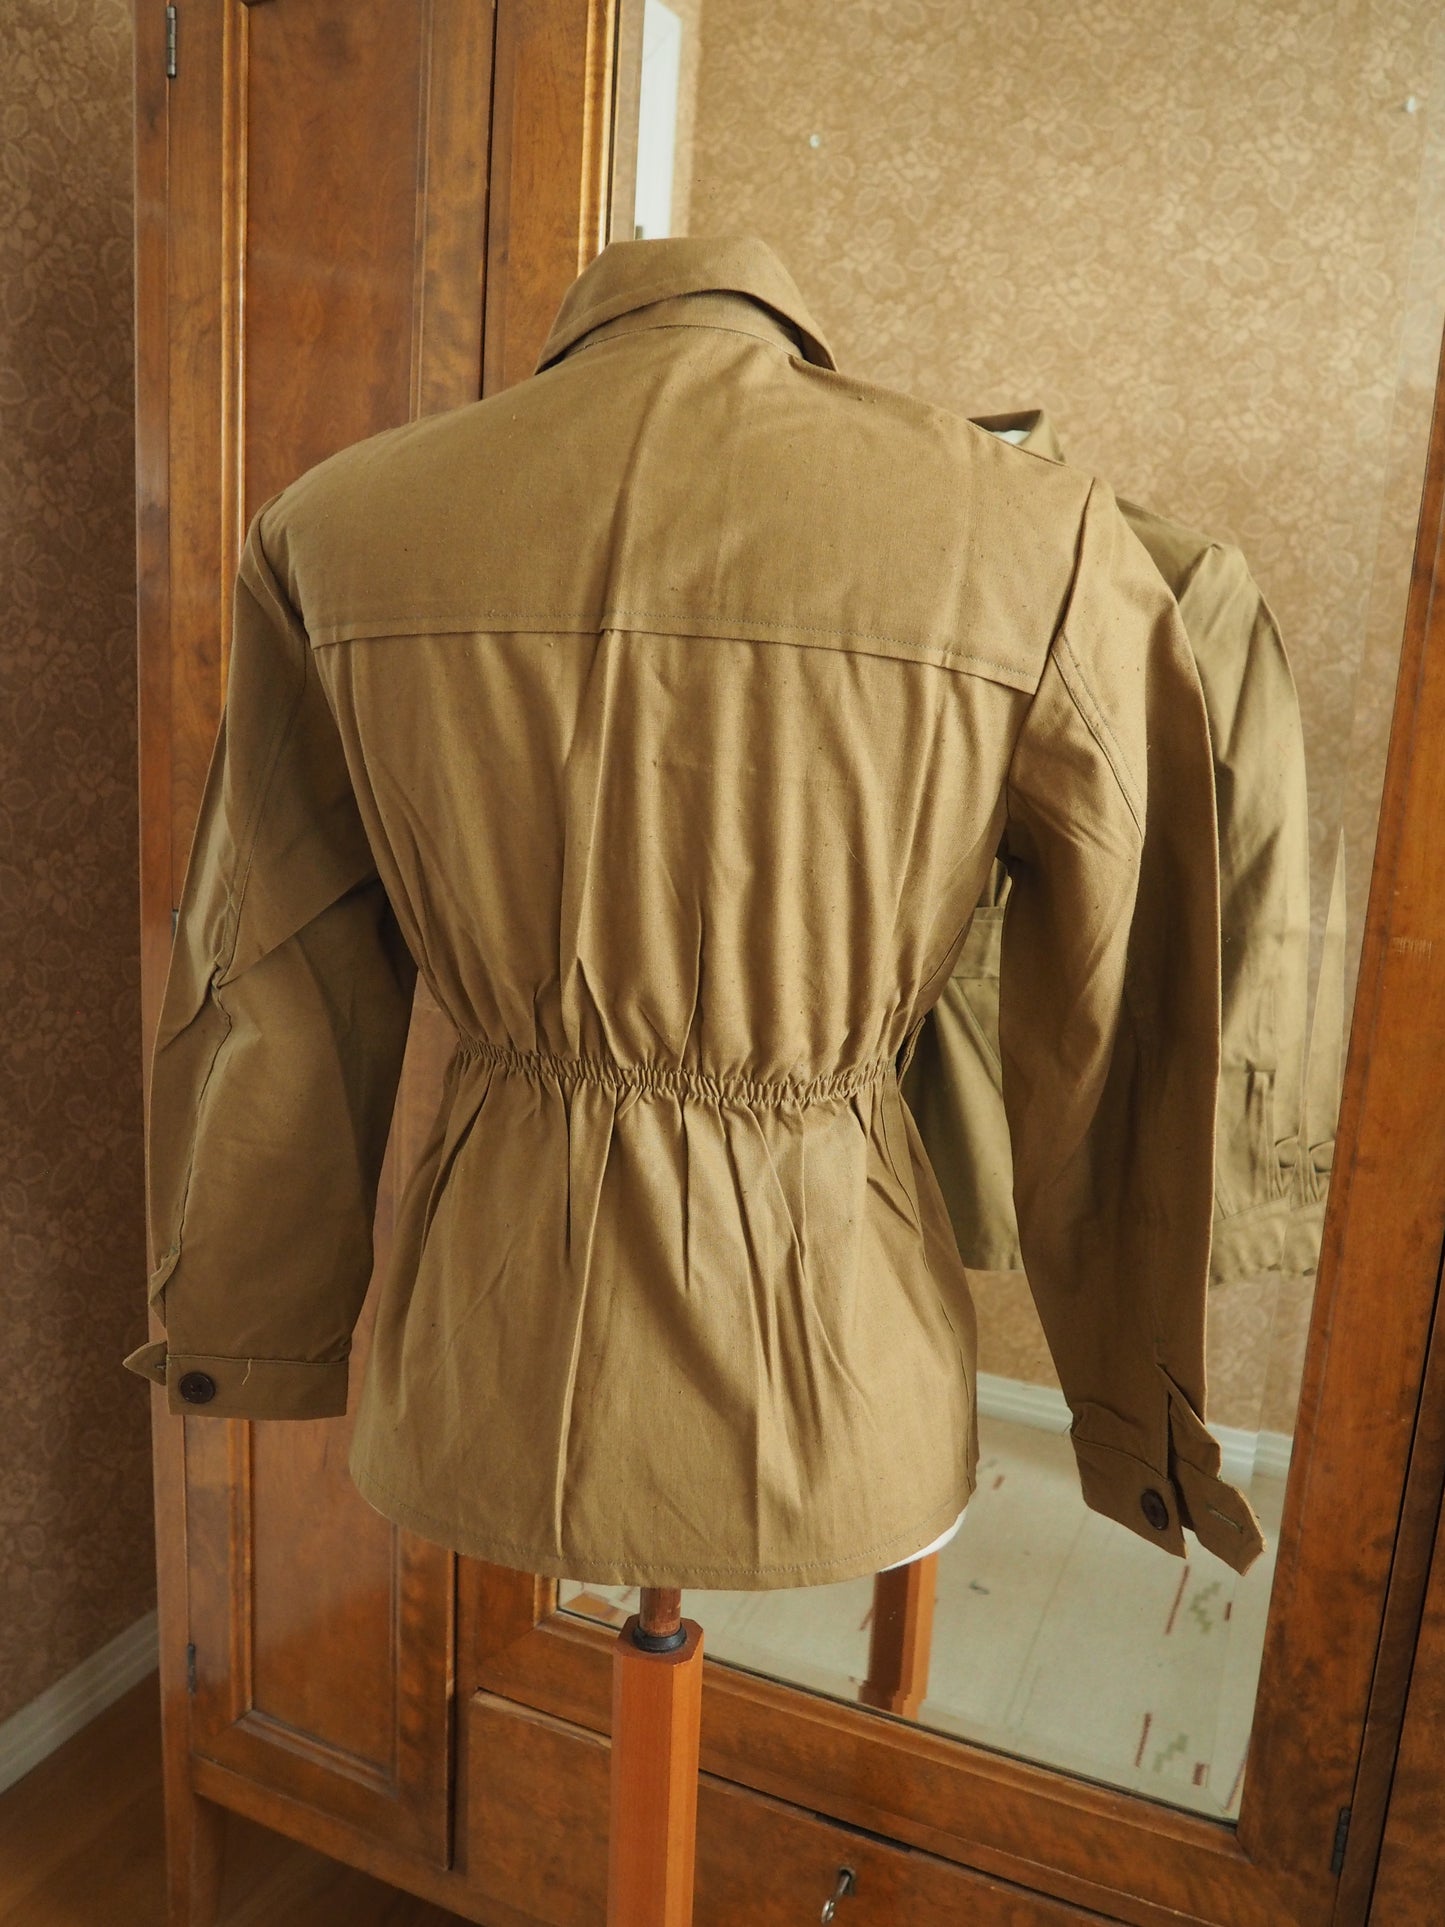 Vaaleanruskea takki, käyttämätöntä vanhaa varastoa